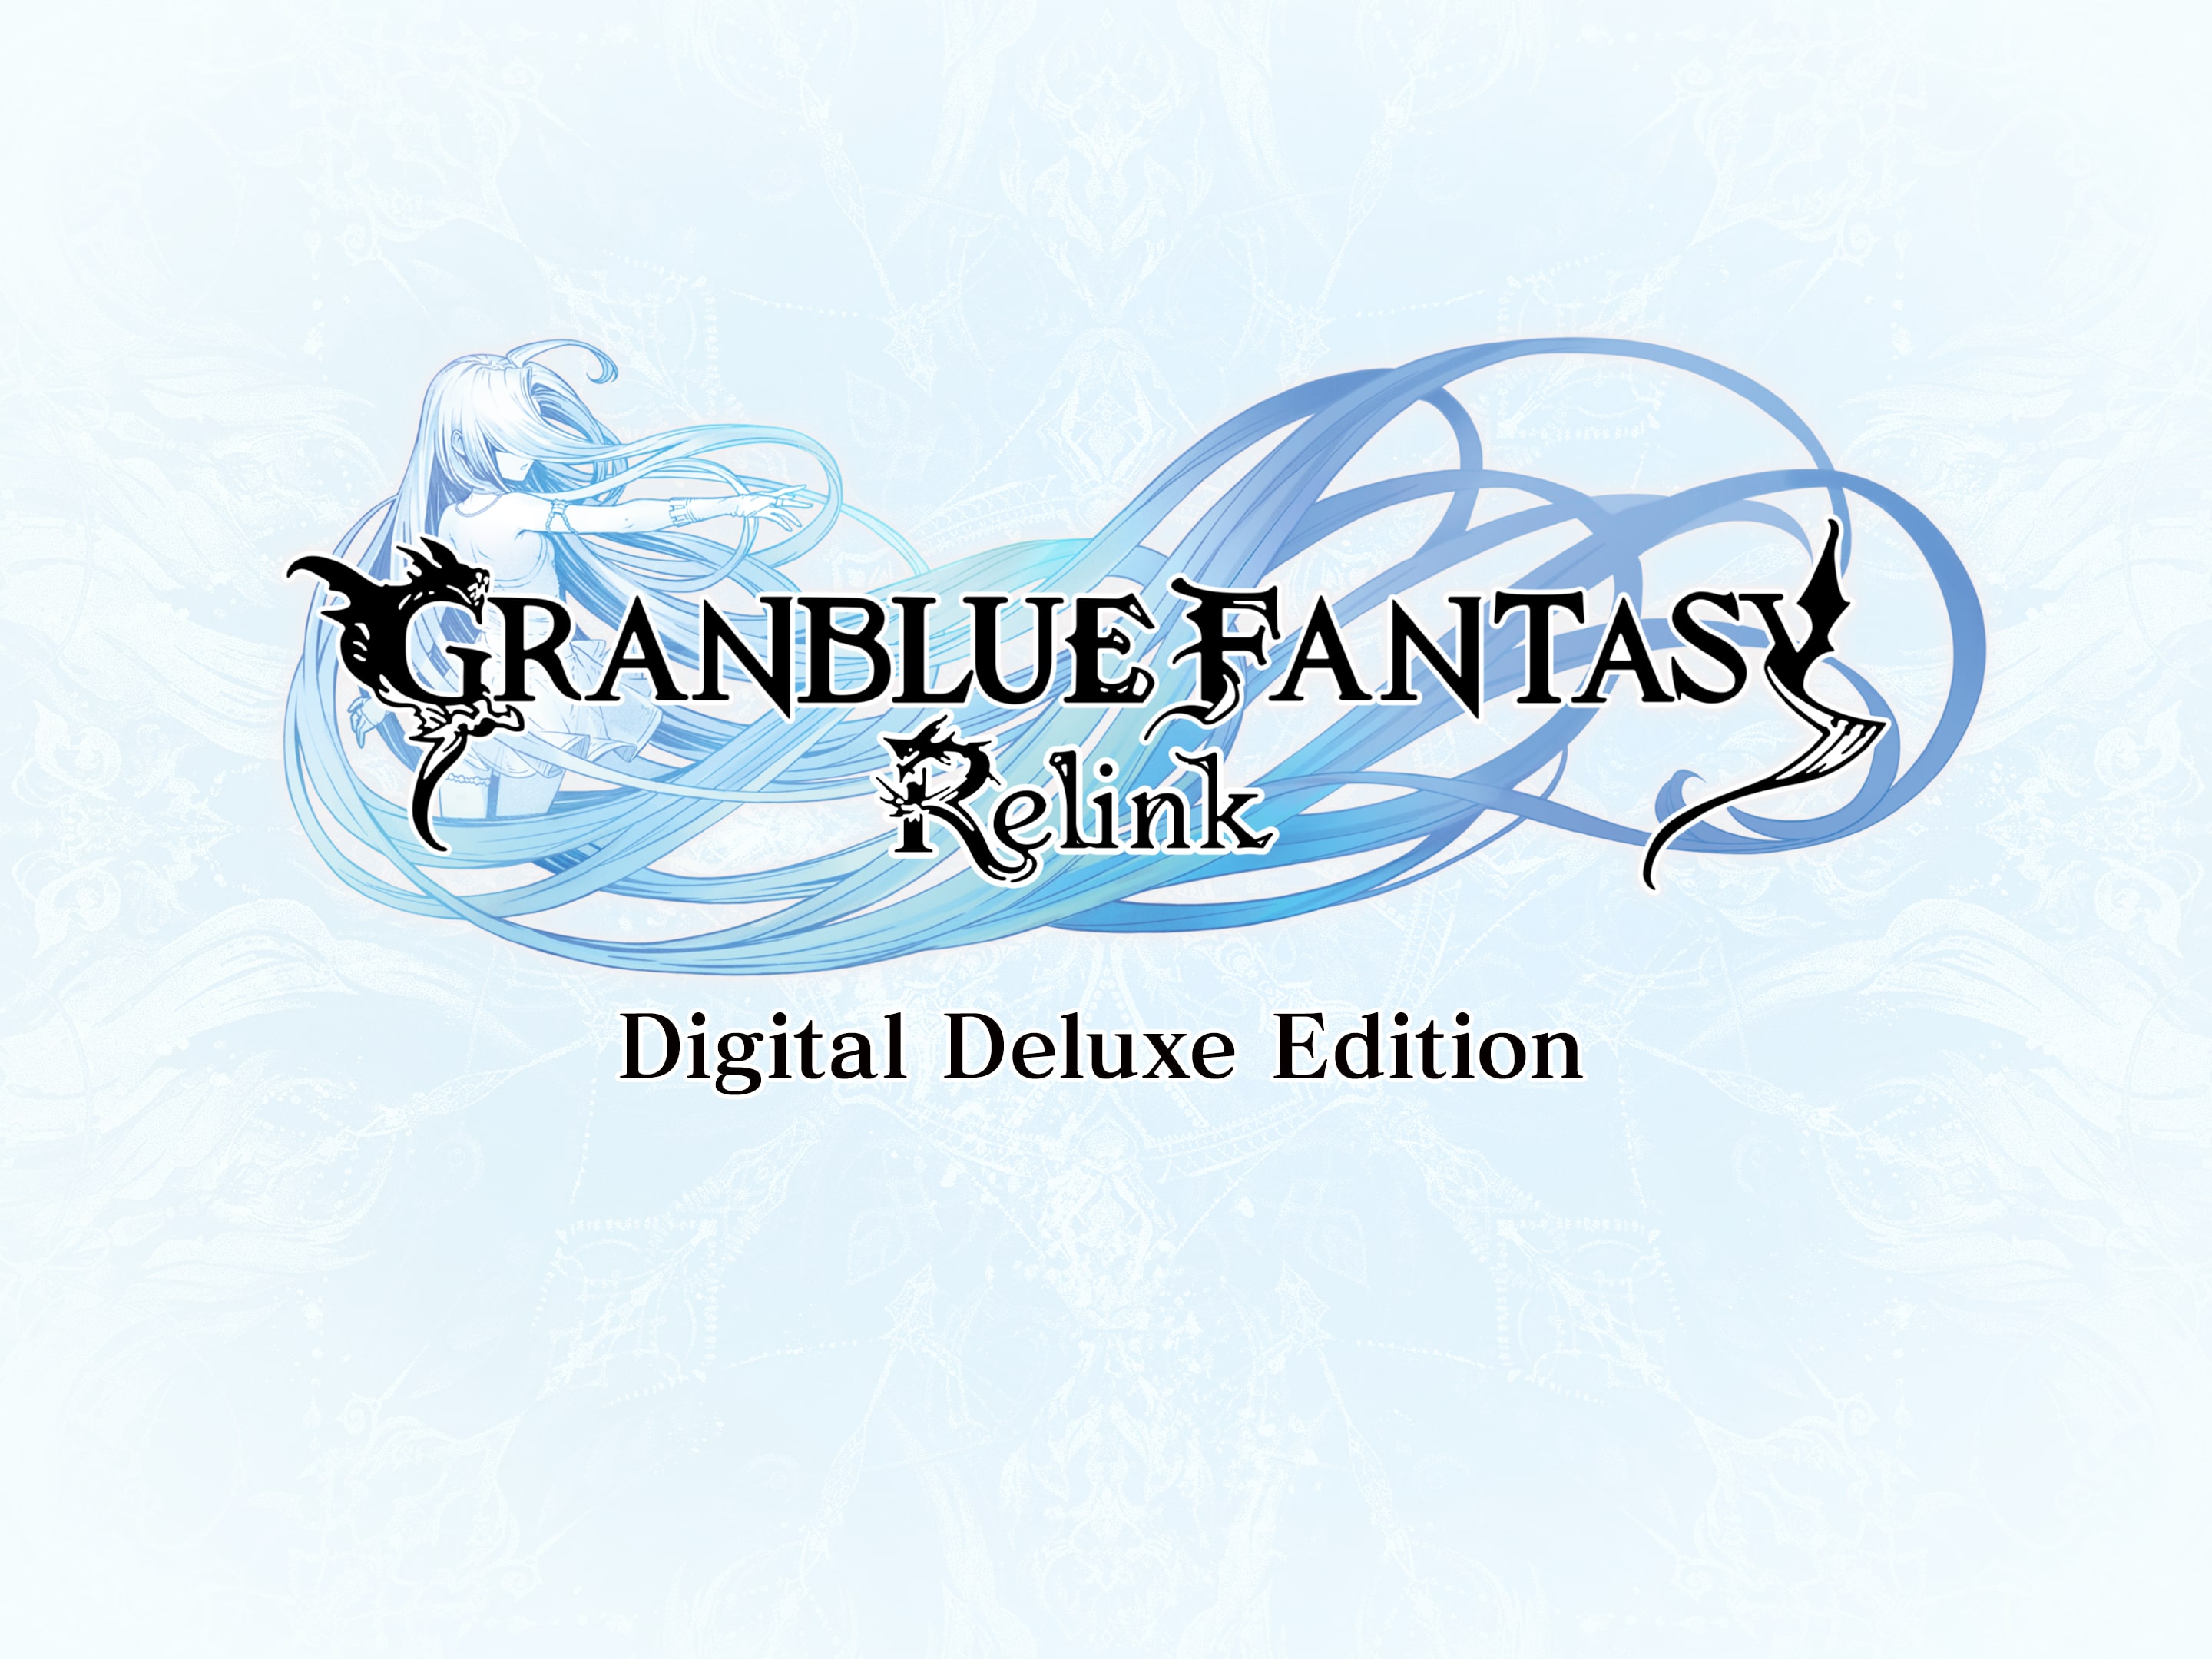 Granblue Fantasy: Relink Digital Deluxe Edition